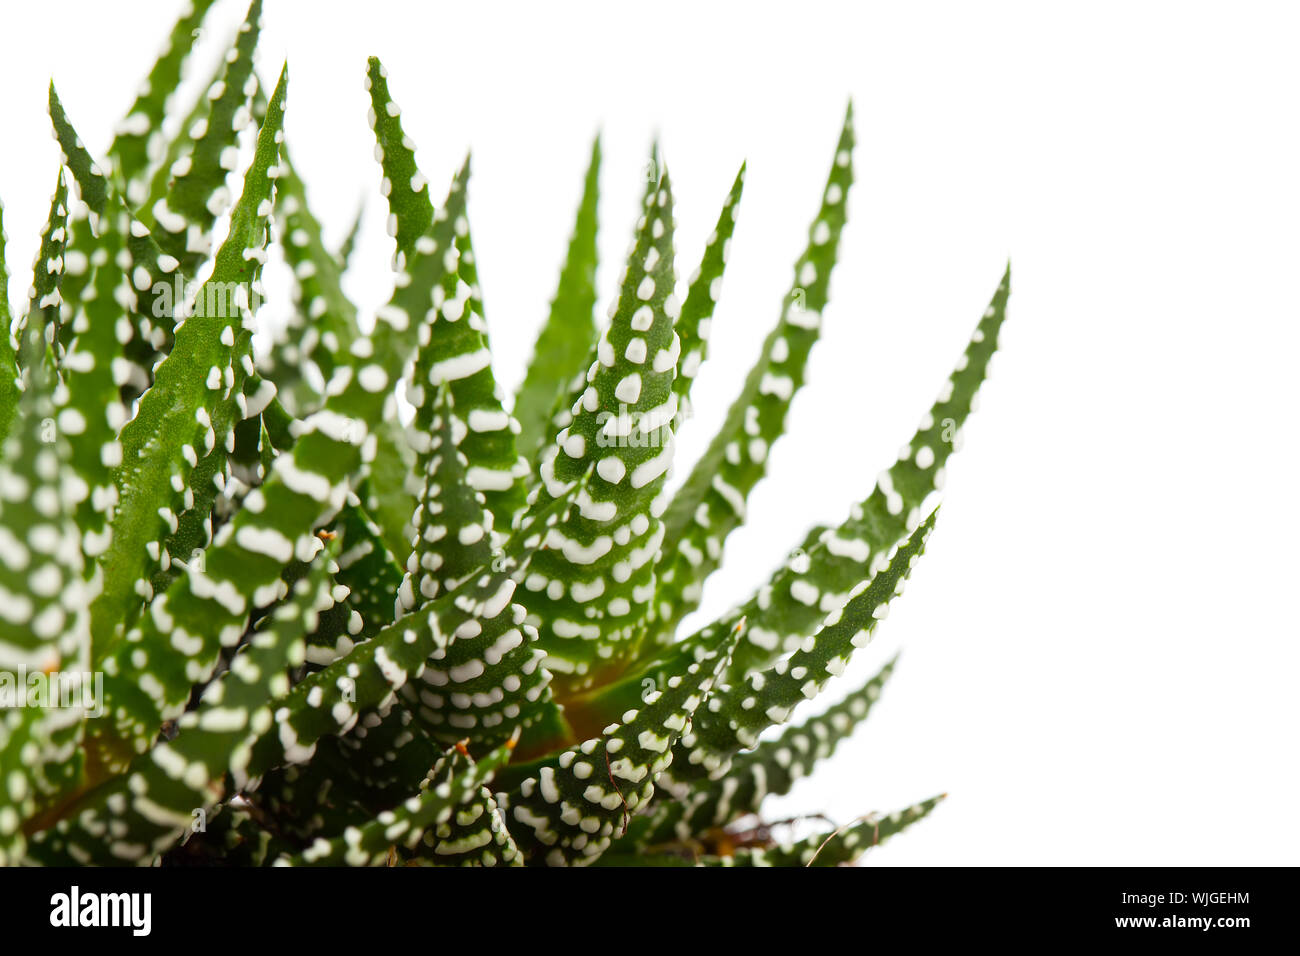 Aloe isolated on white background Stock Photo